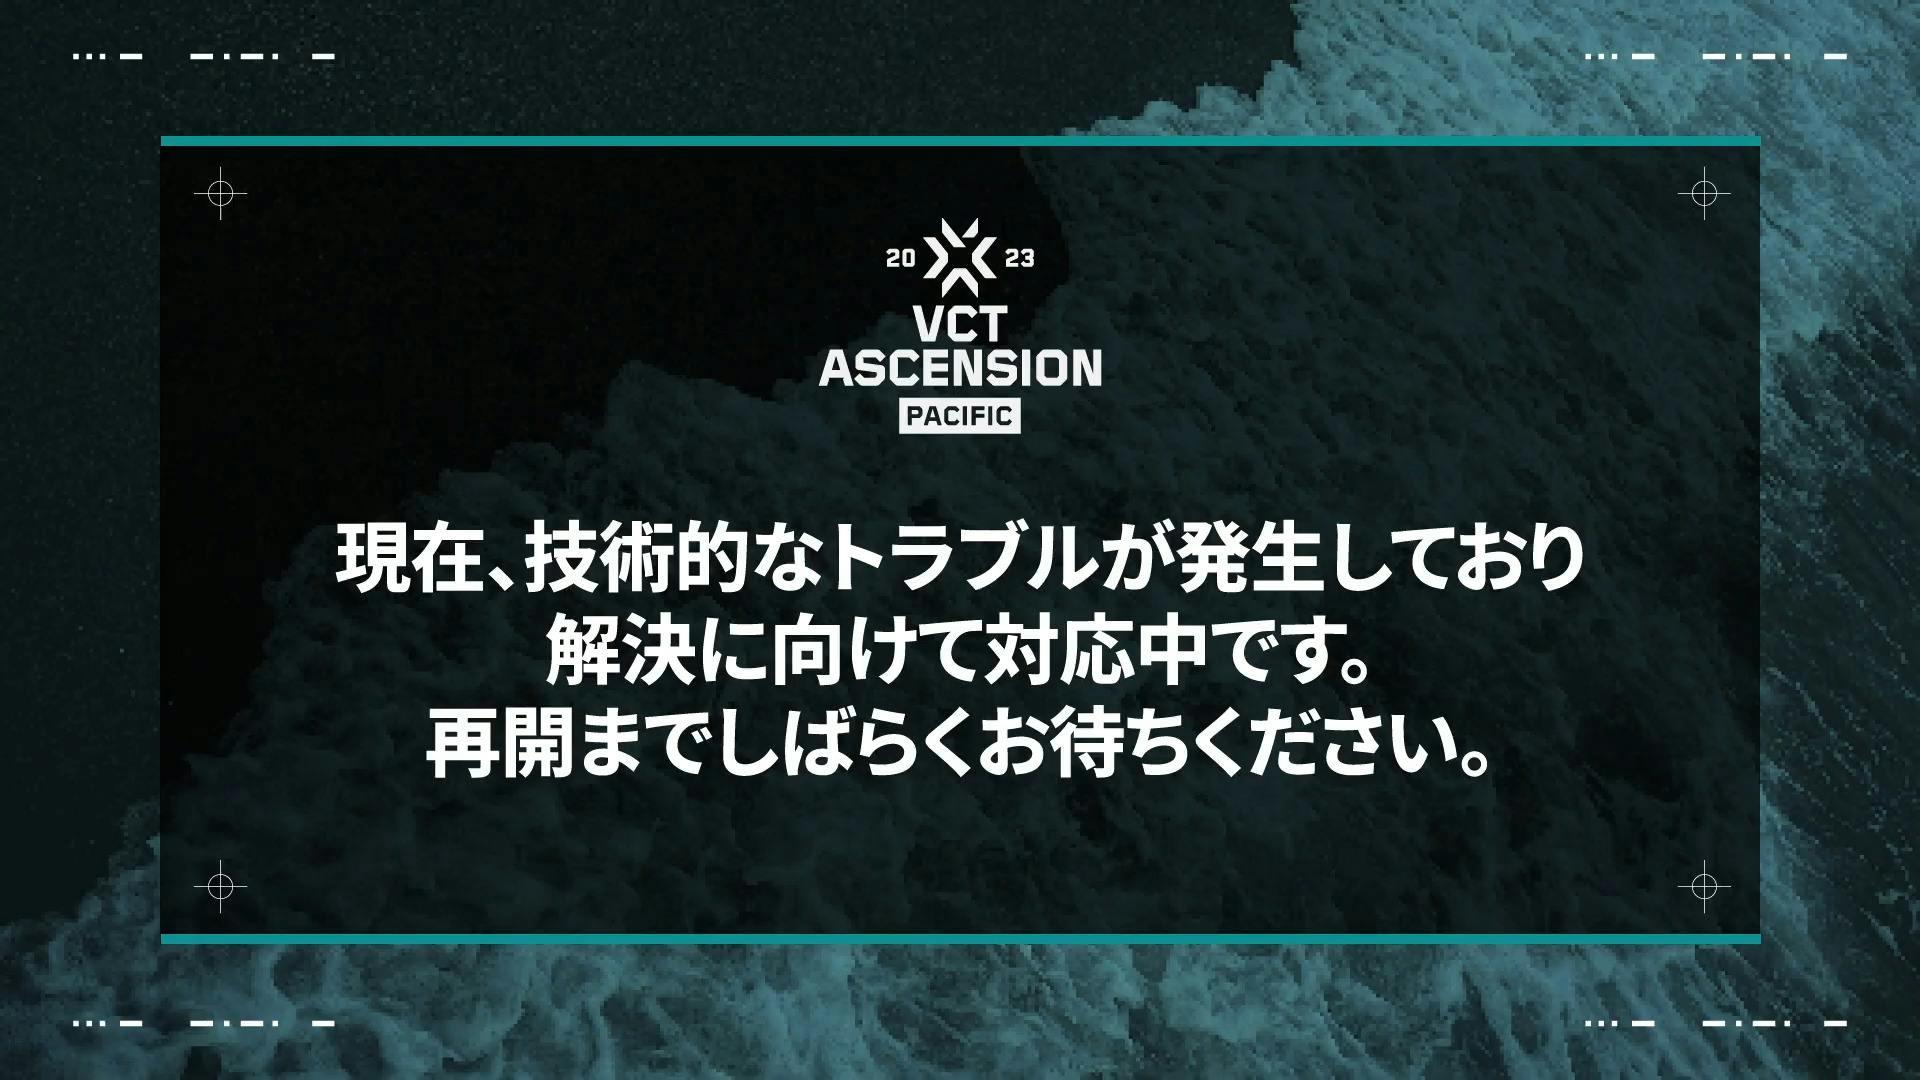 「VCT Ascension Pacific」試合が強制終了するなどのトラブルが連続で発生し、非難轟々。SCARZ戦はなんと8時間以上の遅延の末スタート